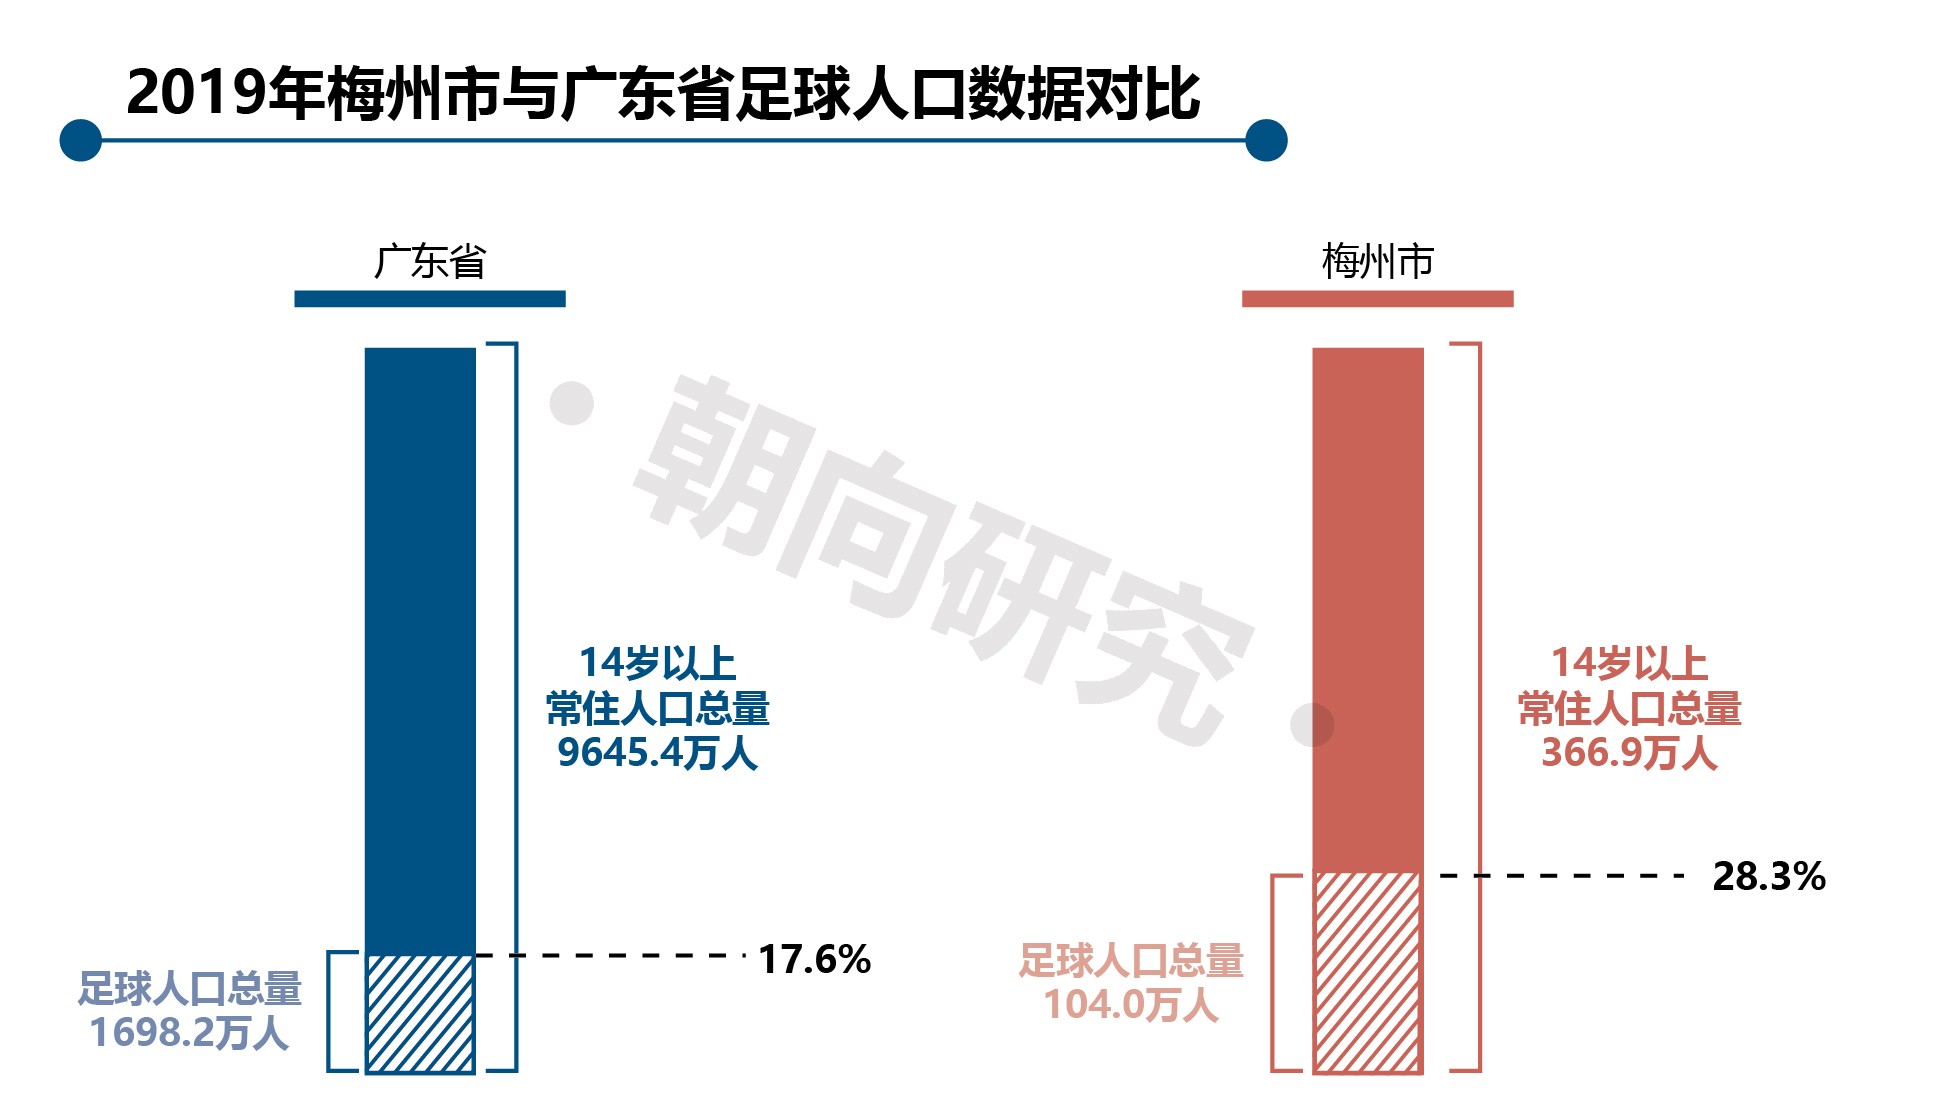 2019年梅州与广东省足球人口数据对比-01.jpg